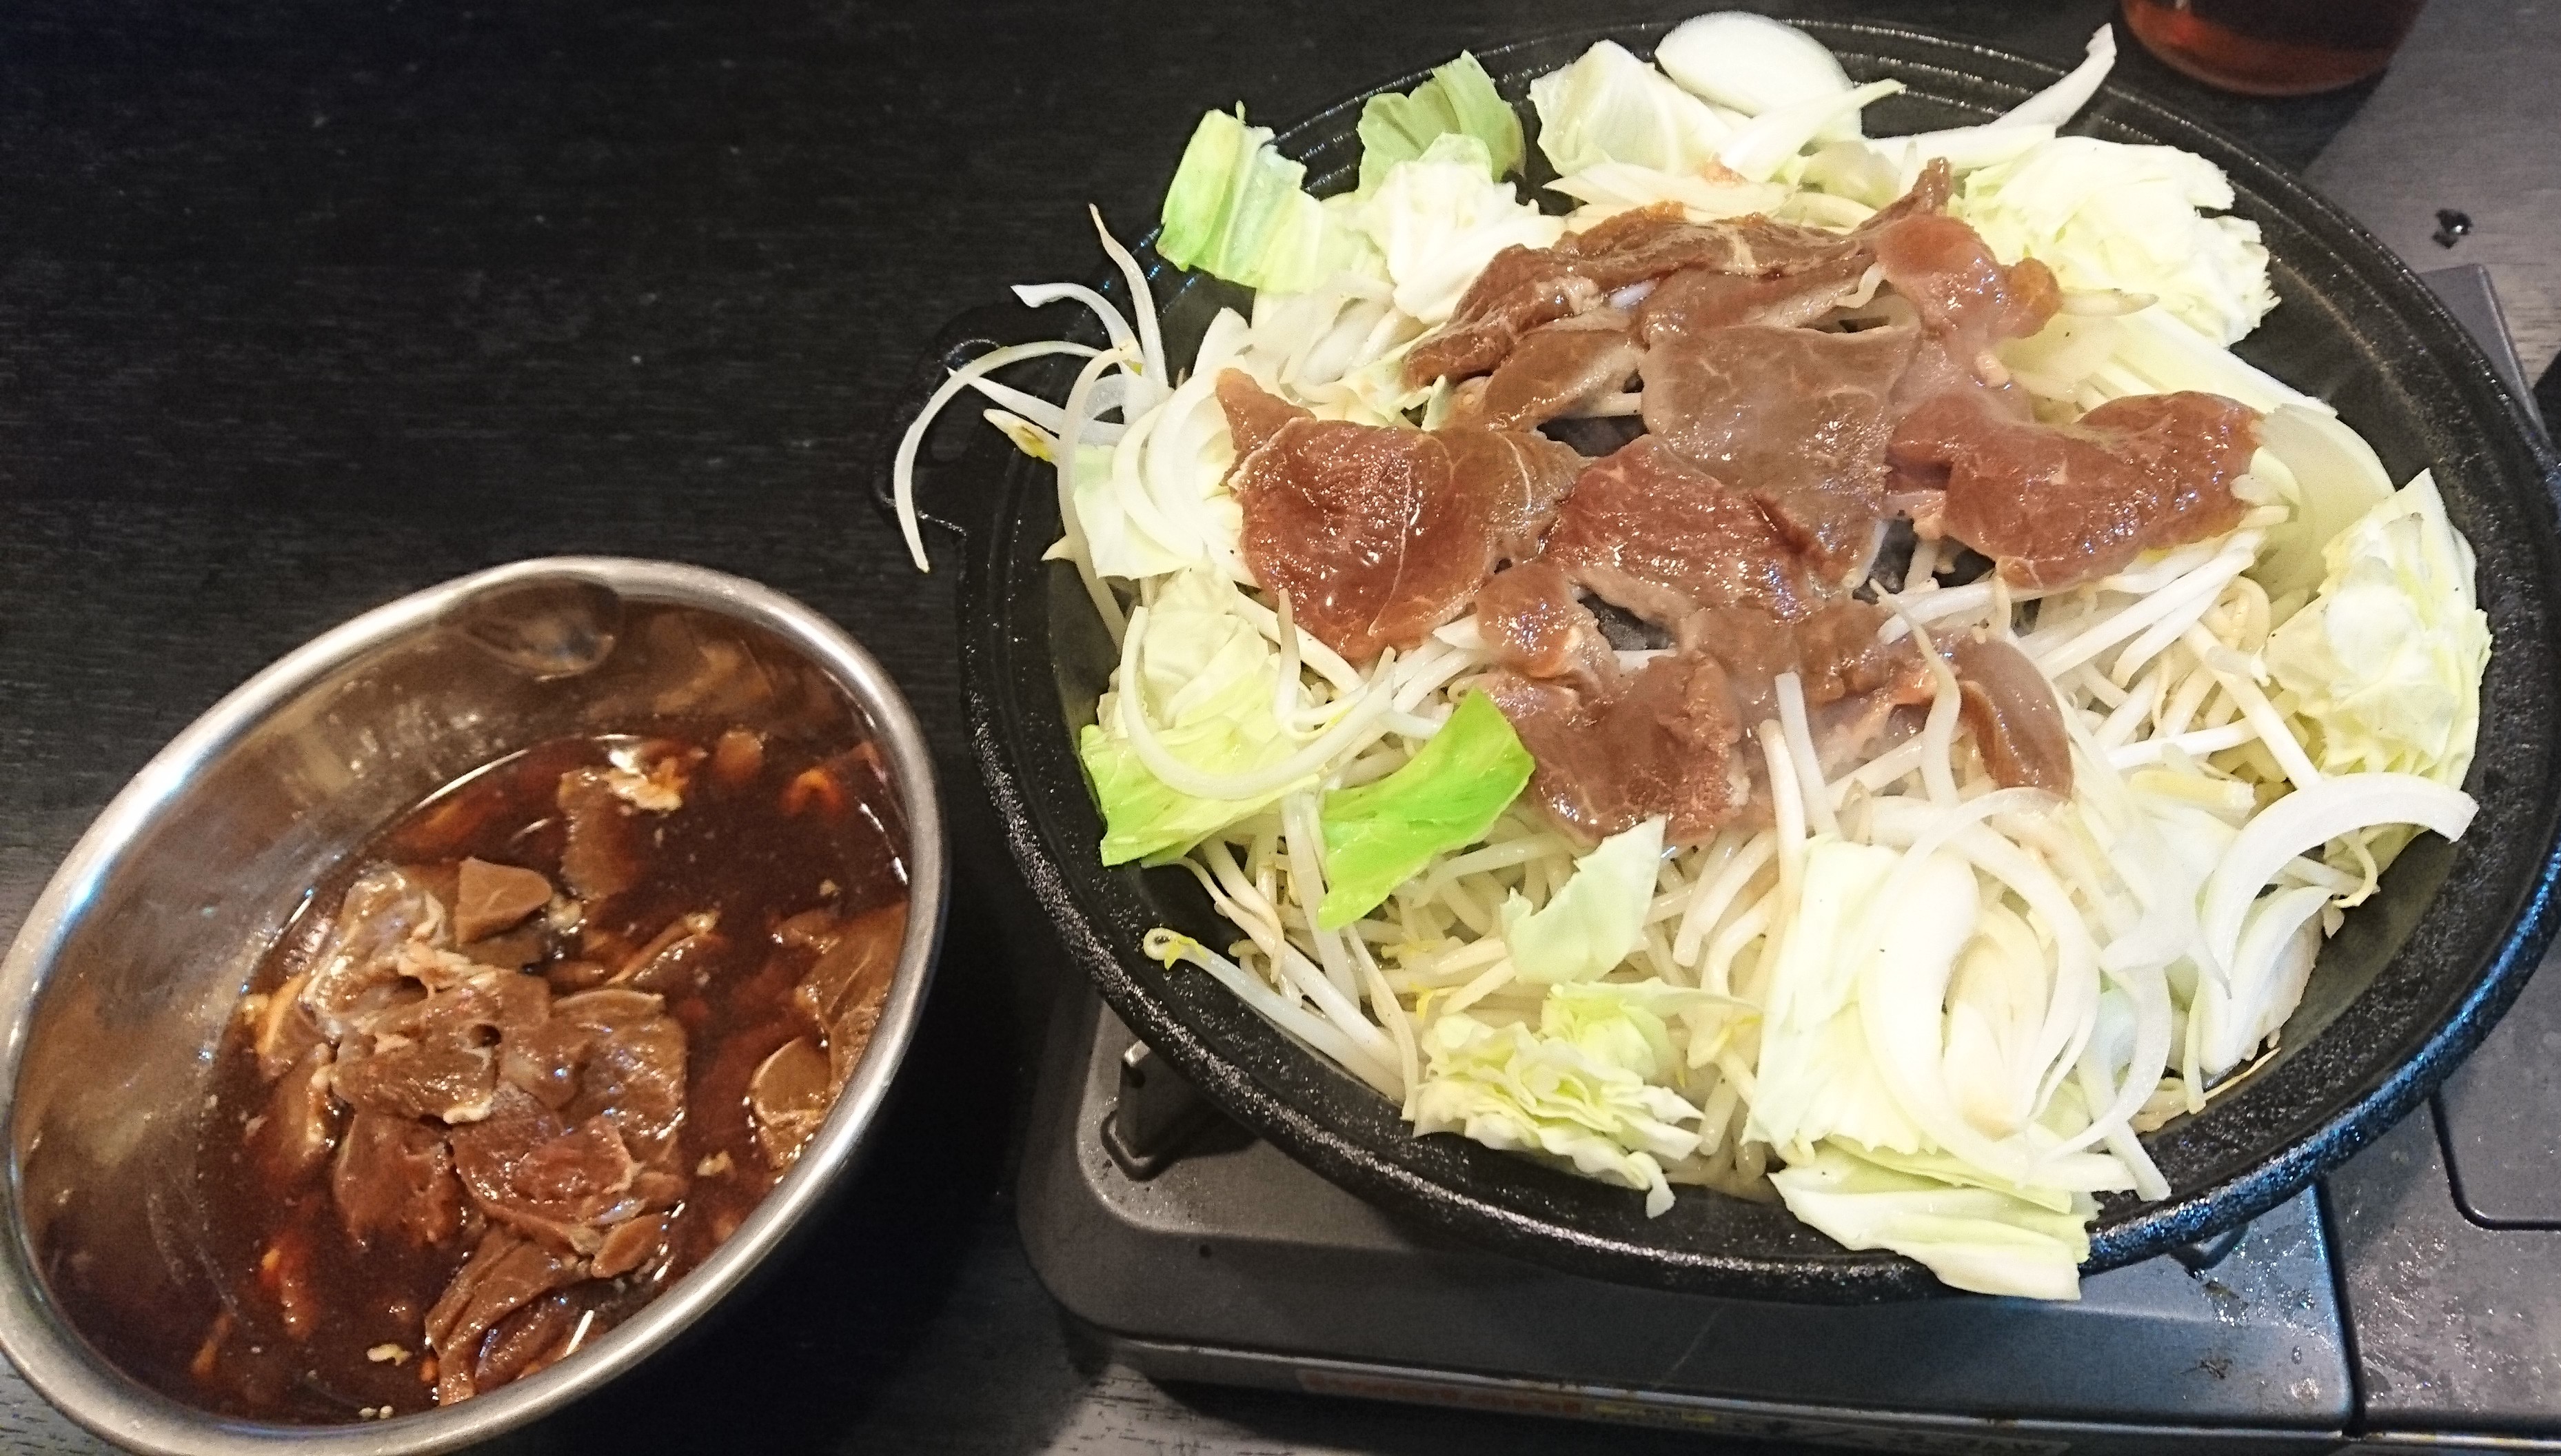 さぁ食うぞ 松尾ジンギスカンを専用鍋で美味しく食べる方法を紹介します 北海道の観光 お土産 ラーメン情報を地元32年在住の2人が発信する北海道遊食住project